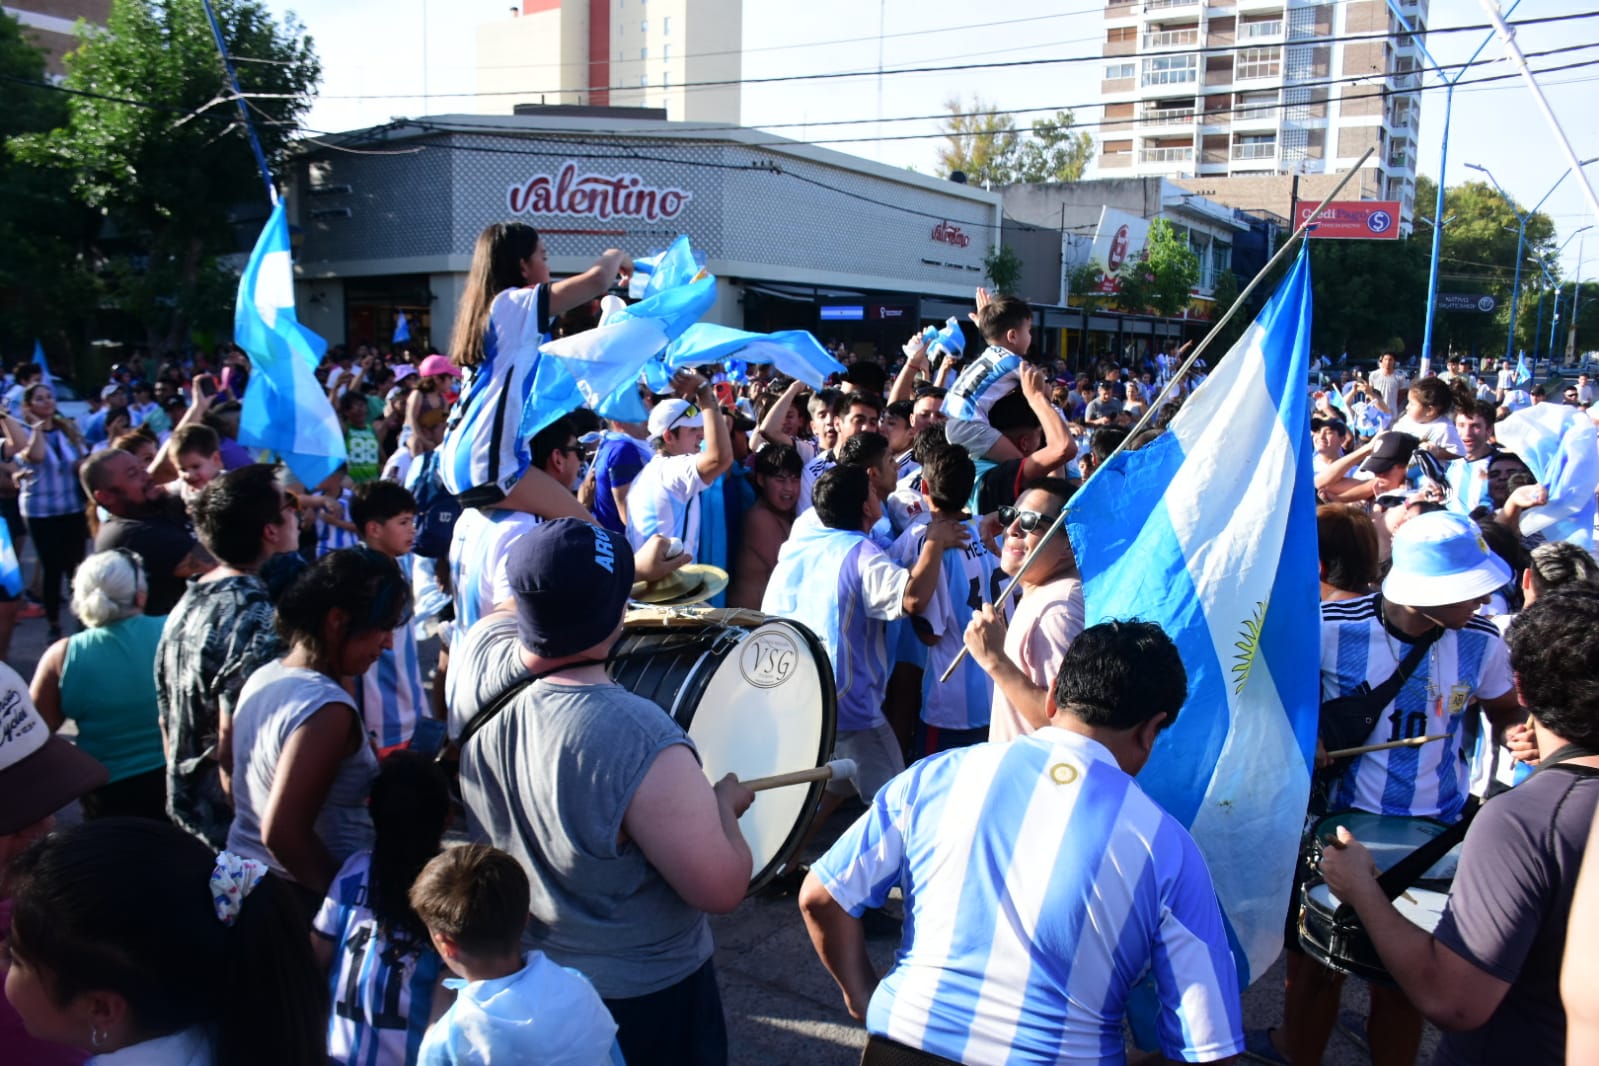 El punto de concentración fue la tradicional esquina de Avenida Roca y Tucumán. Fotos Andrés Maripe